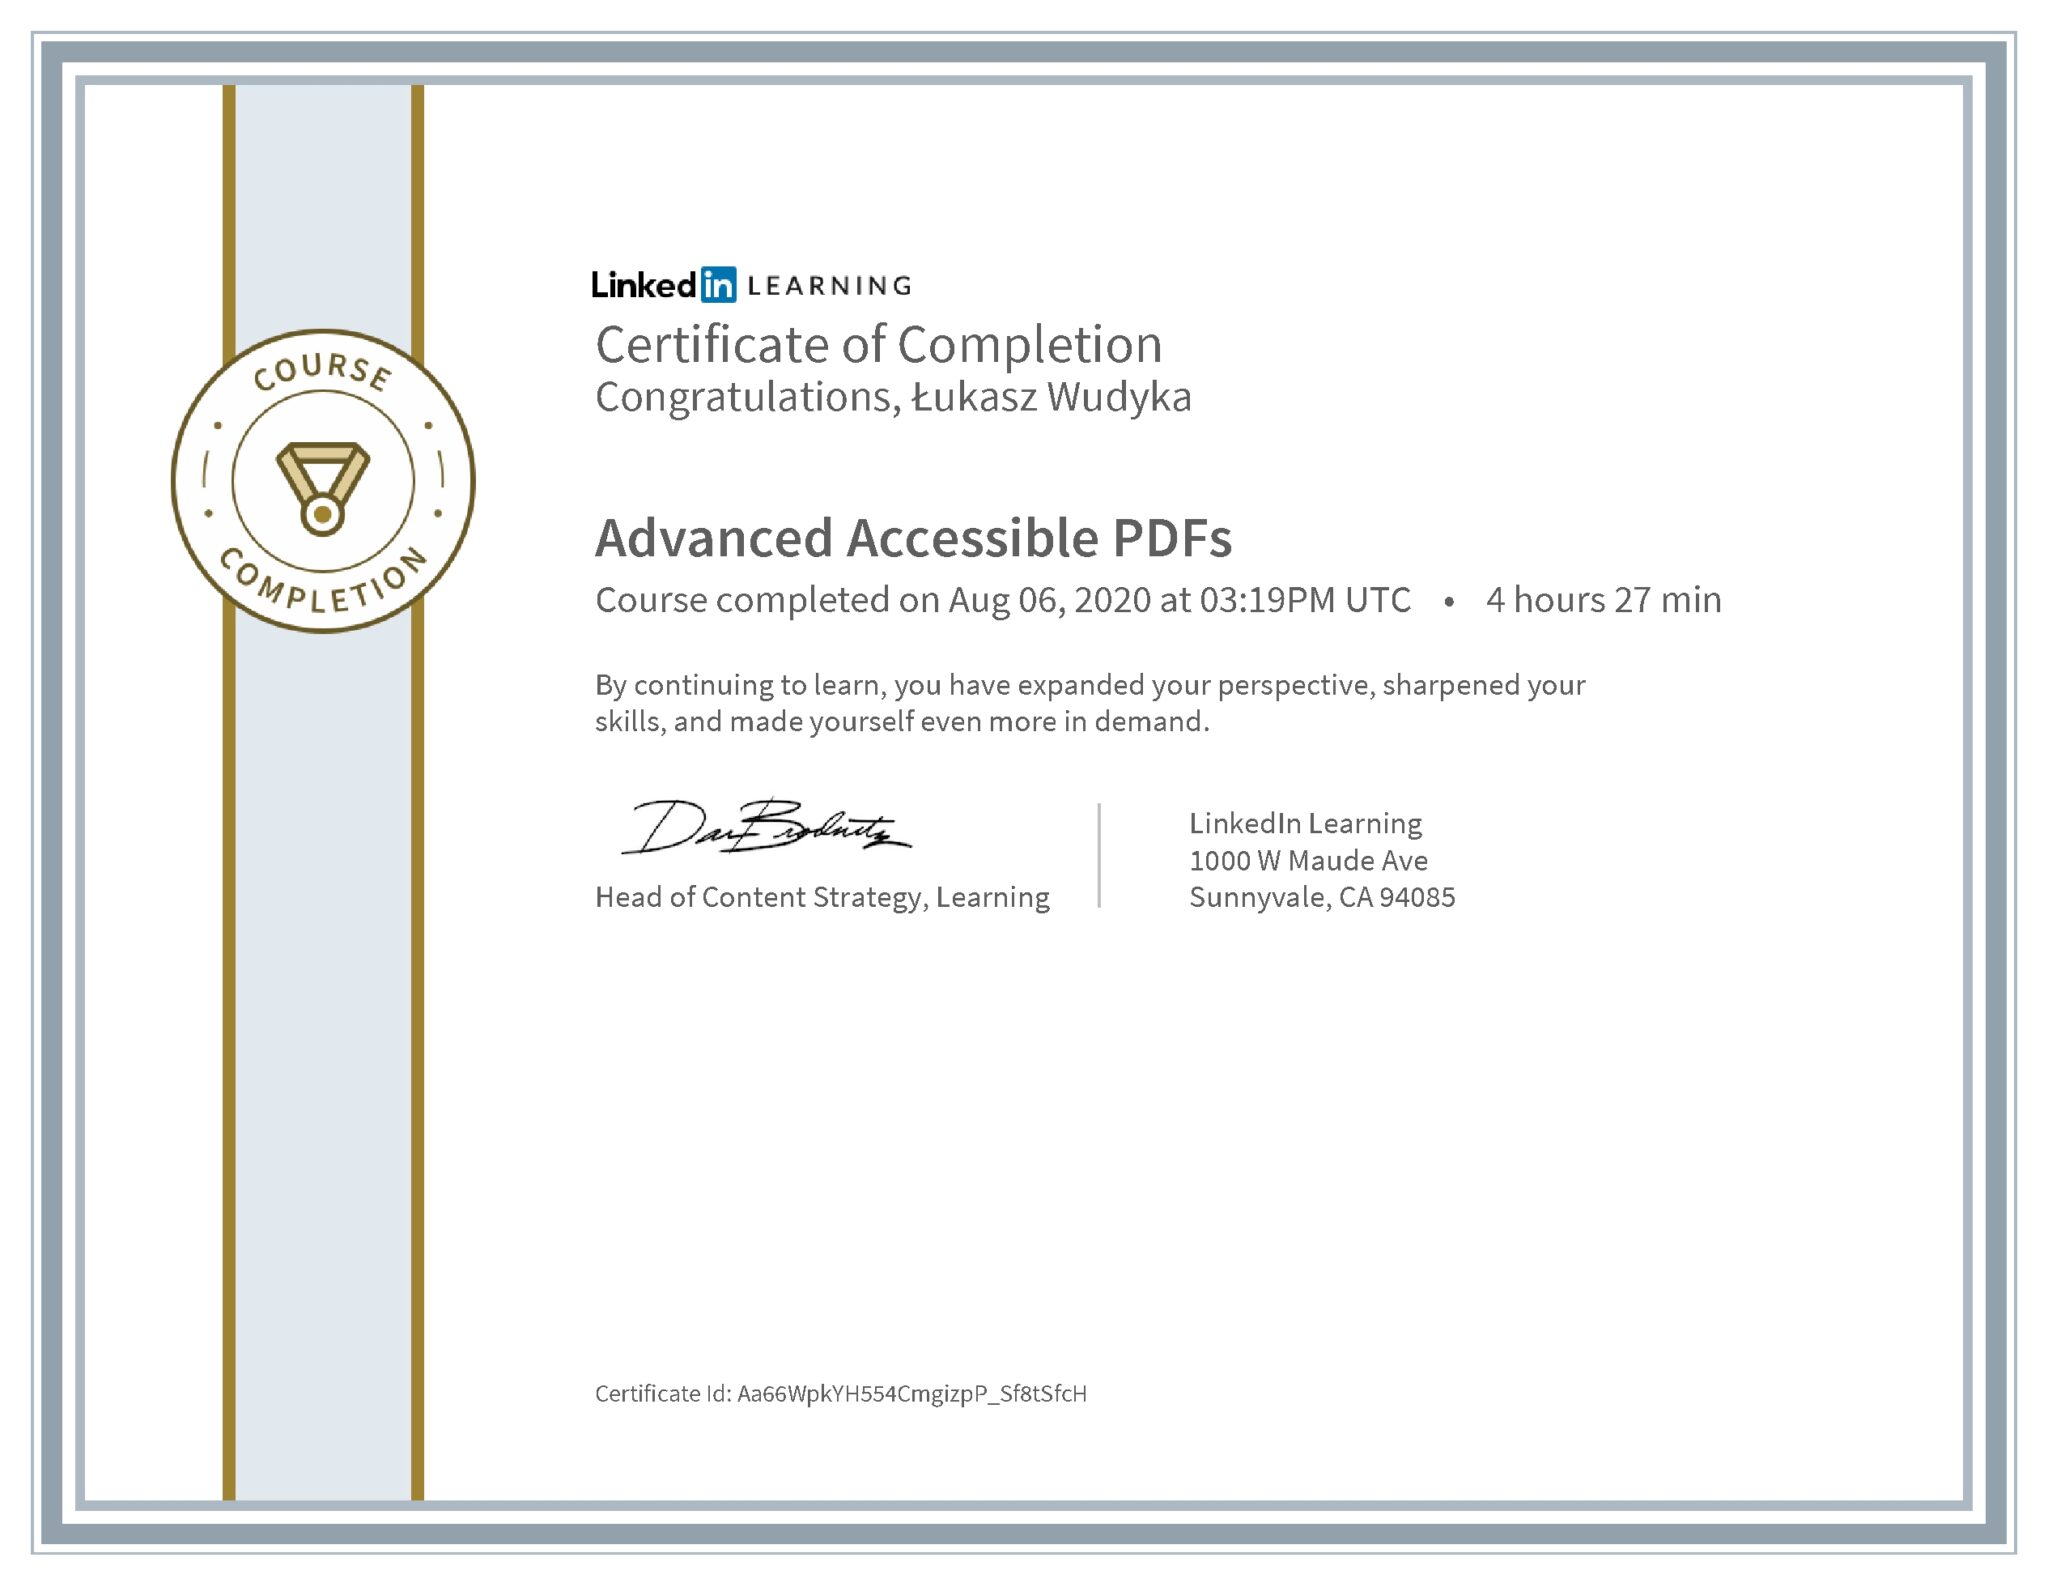 Łukasz Wudyka certyfikat LinkedIn Advanced Accessible PDFs